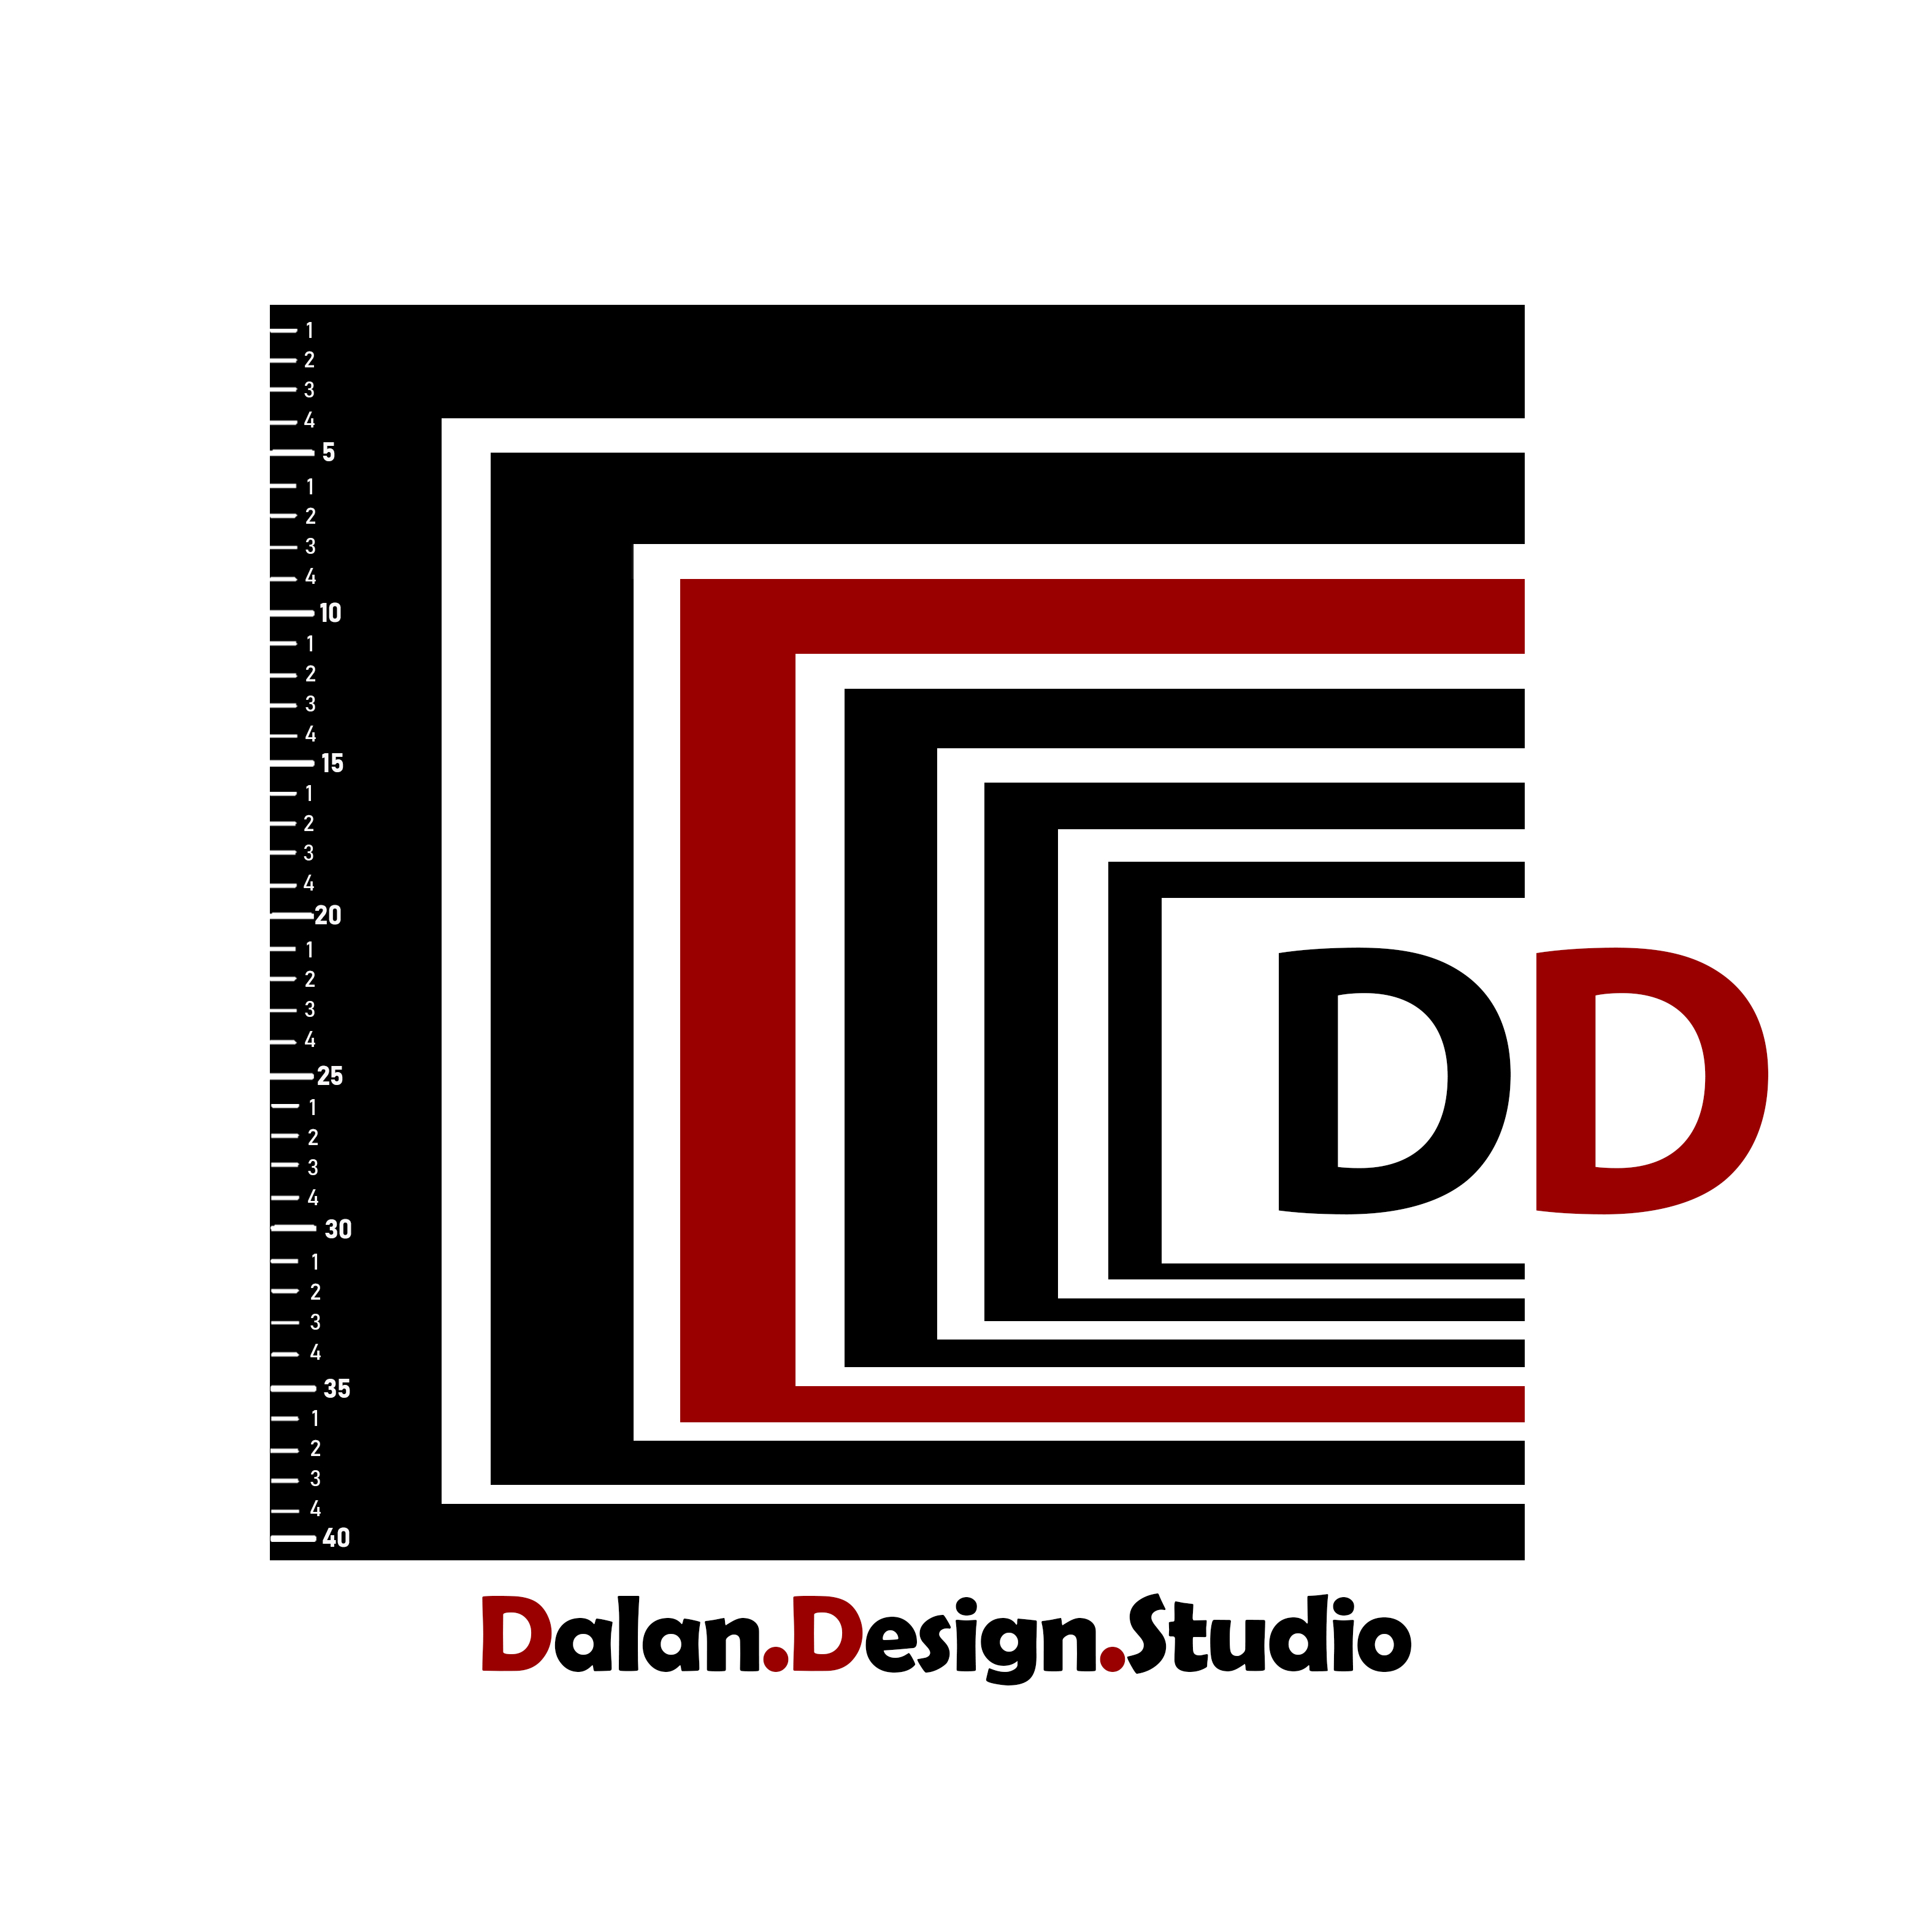 dalan.design.studio